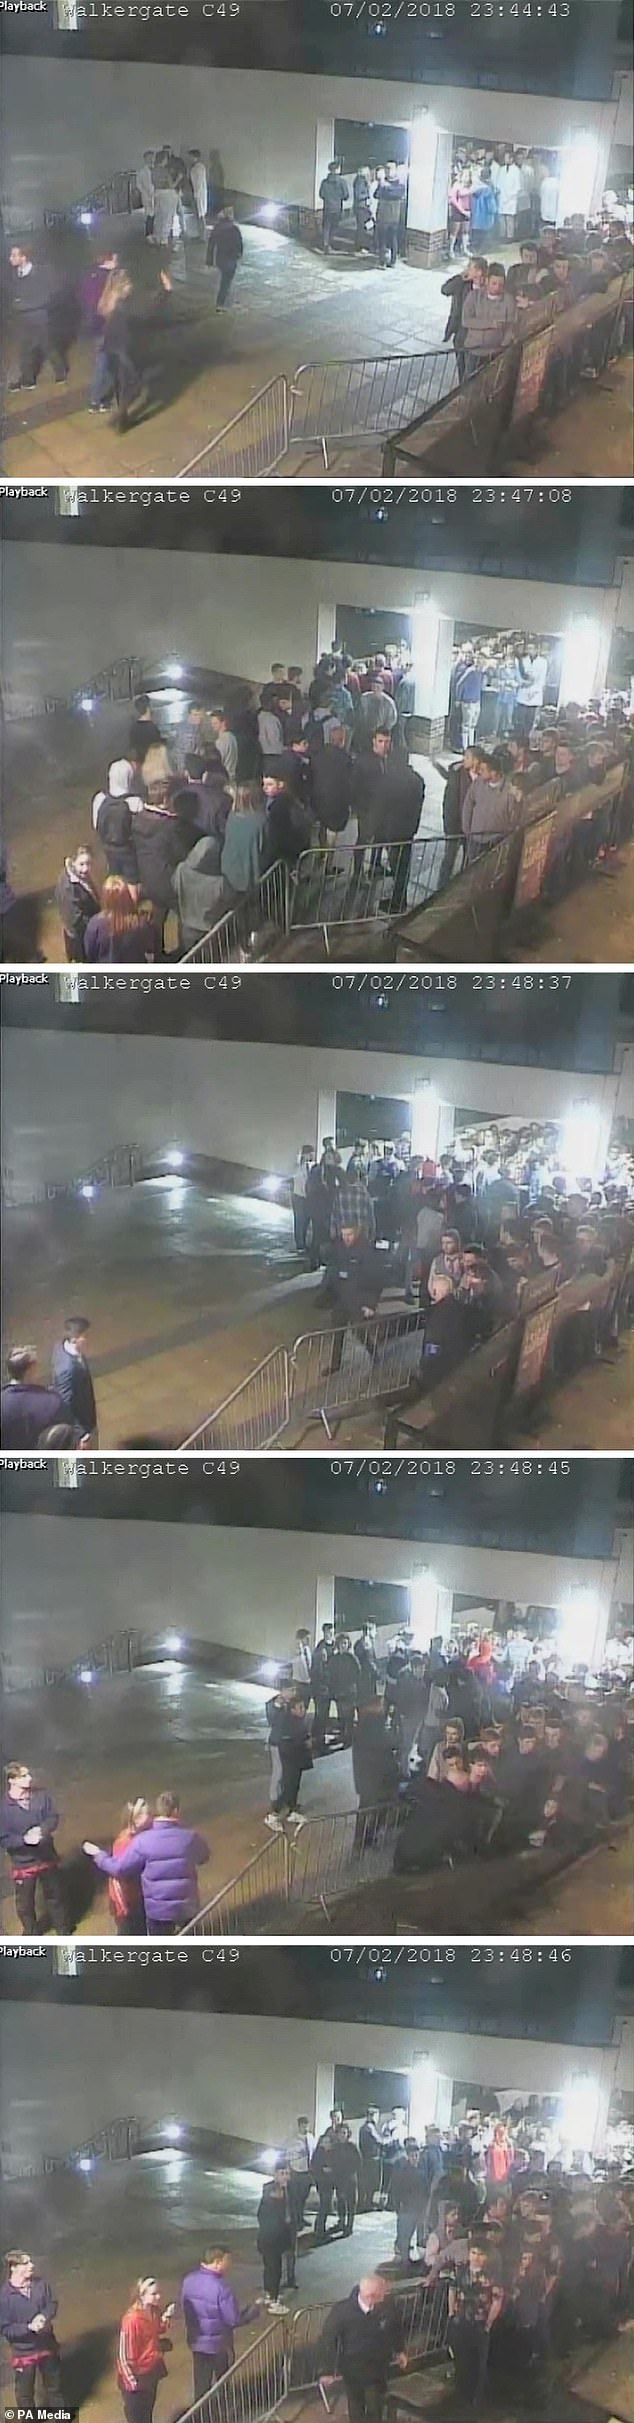 لقطات كاميرات مراقبة خارج ملهى ميسولا الليلي في دورهام ، تُظهر المشاهد بينما يصطف الطلاب في الطابور